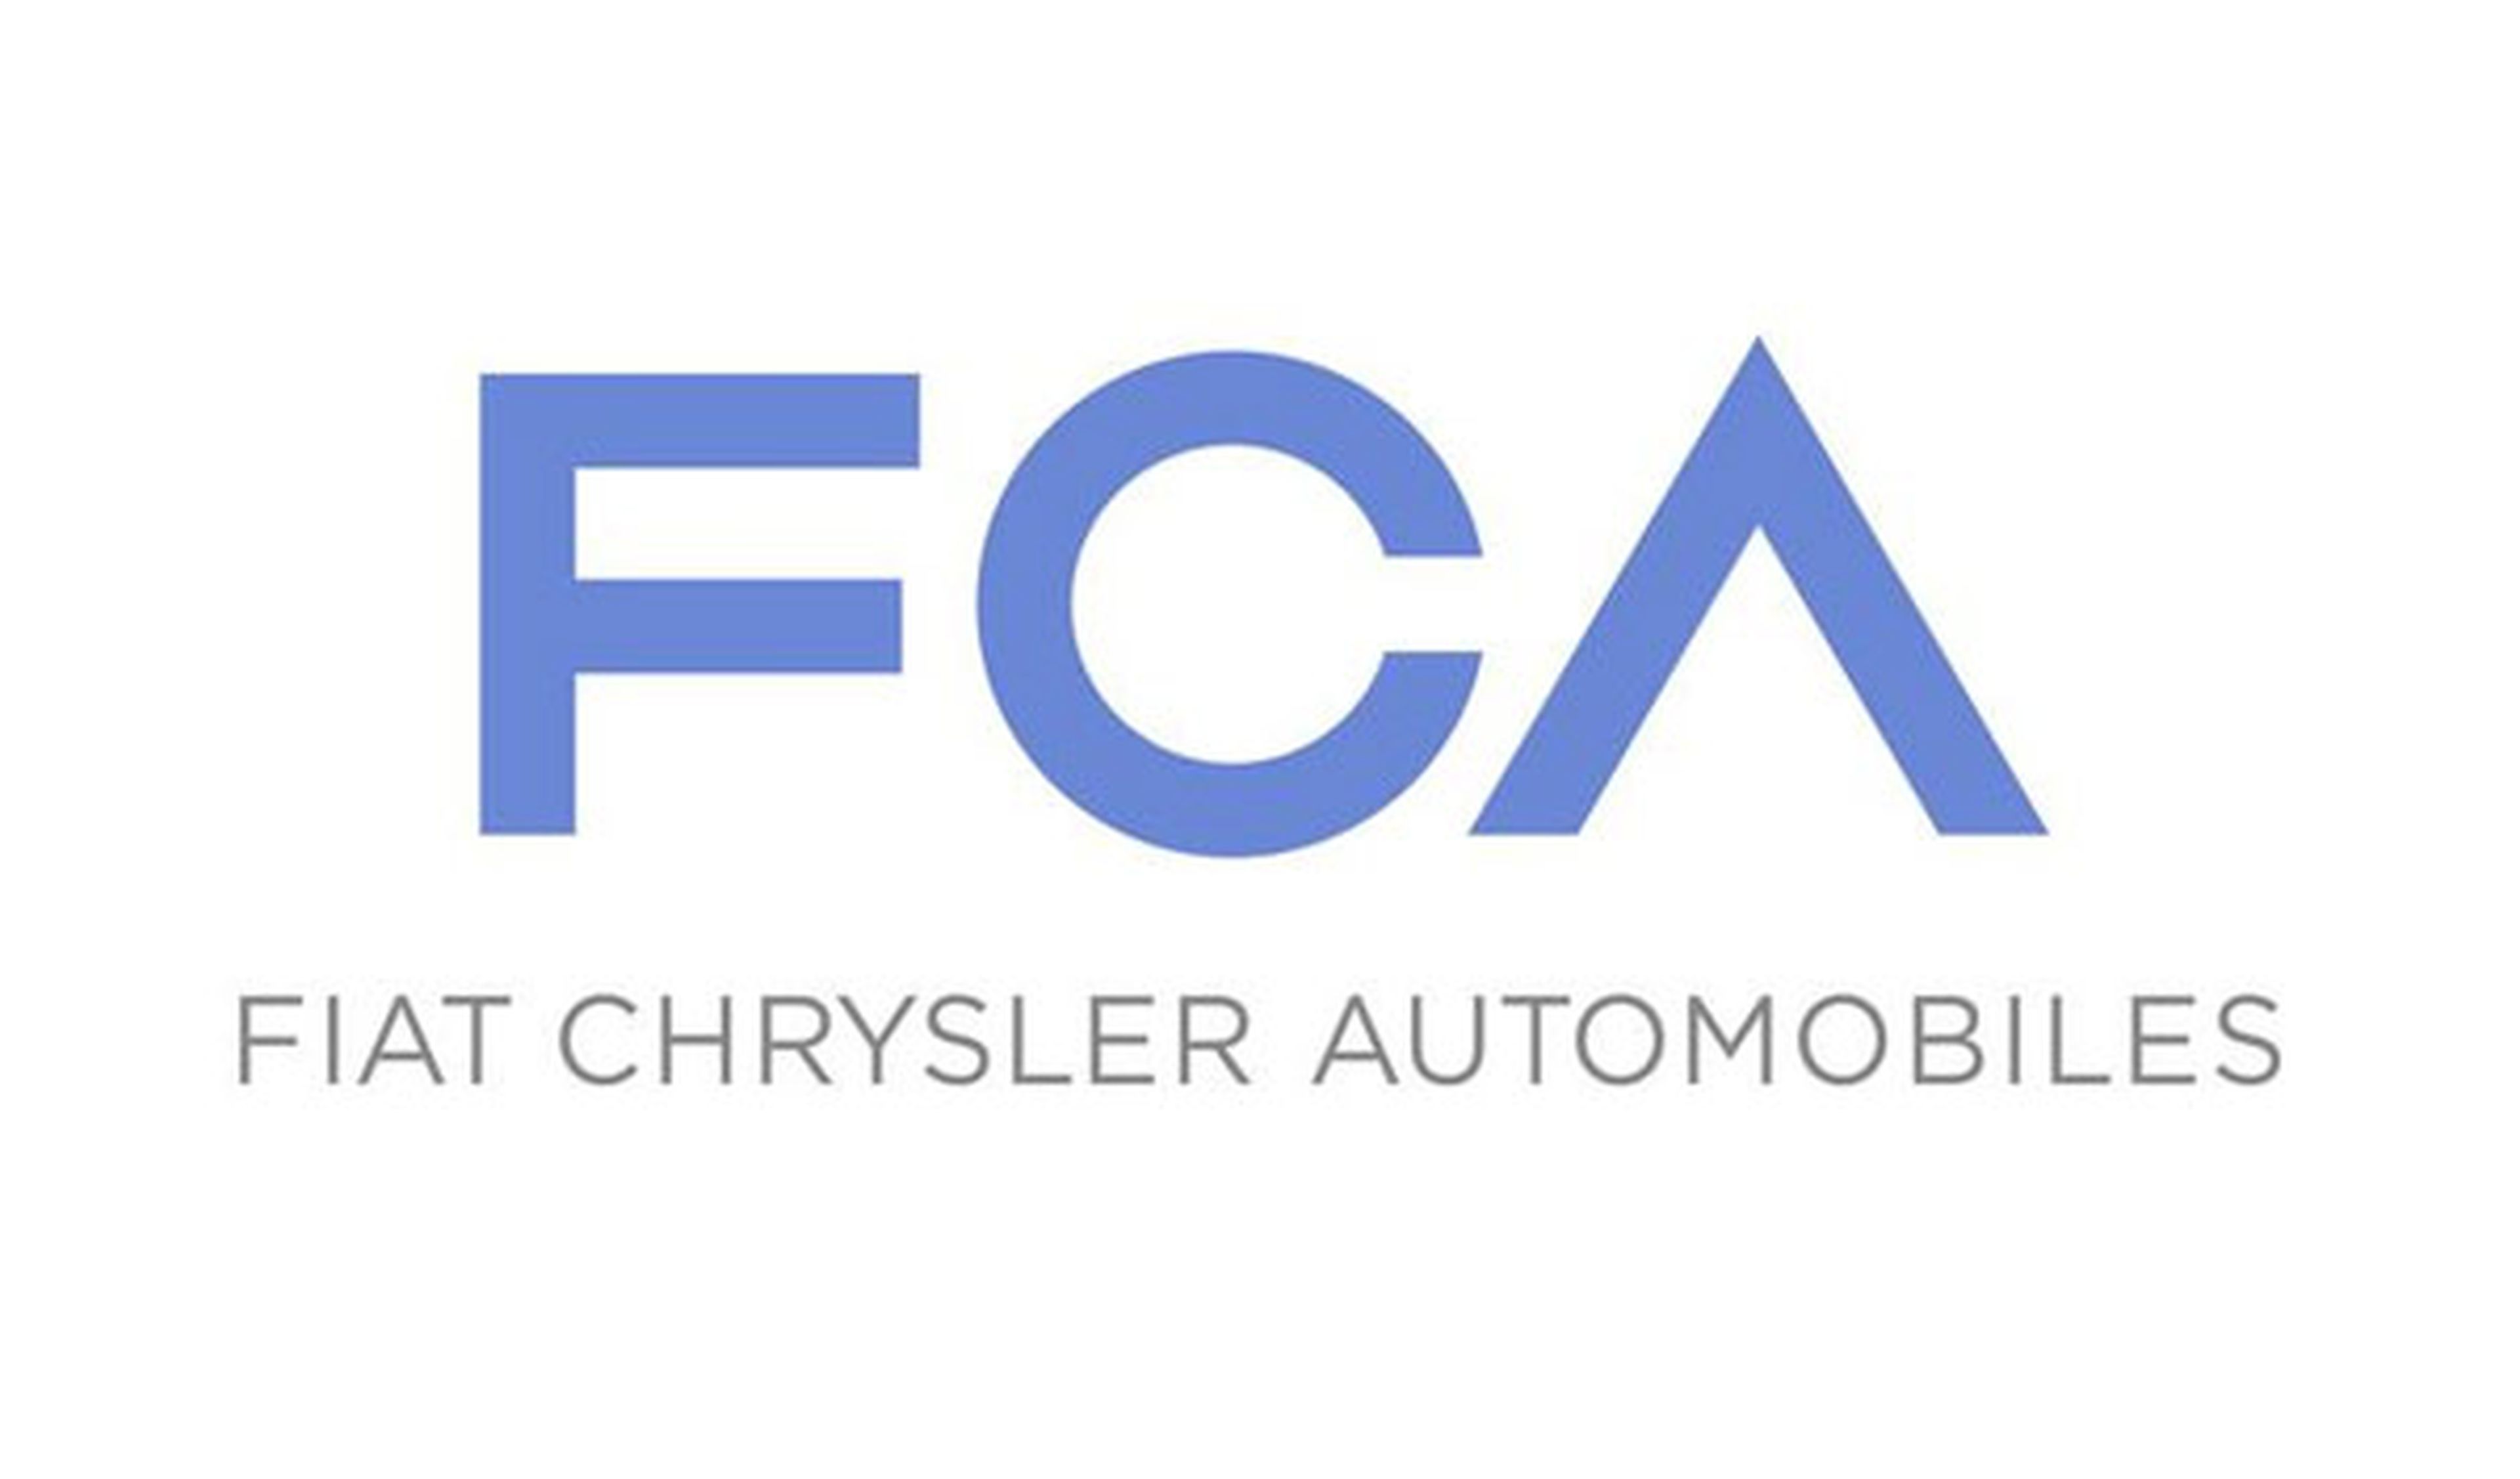 Grupo Fiat Chrysler Automobiles